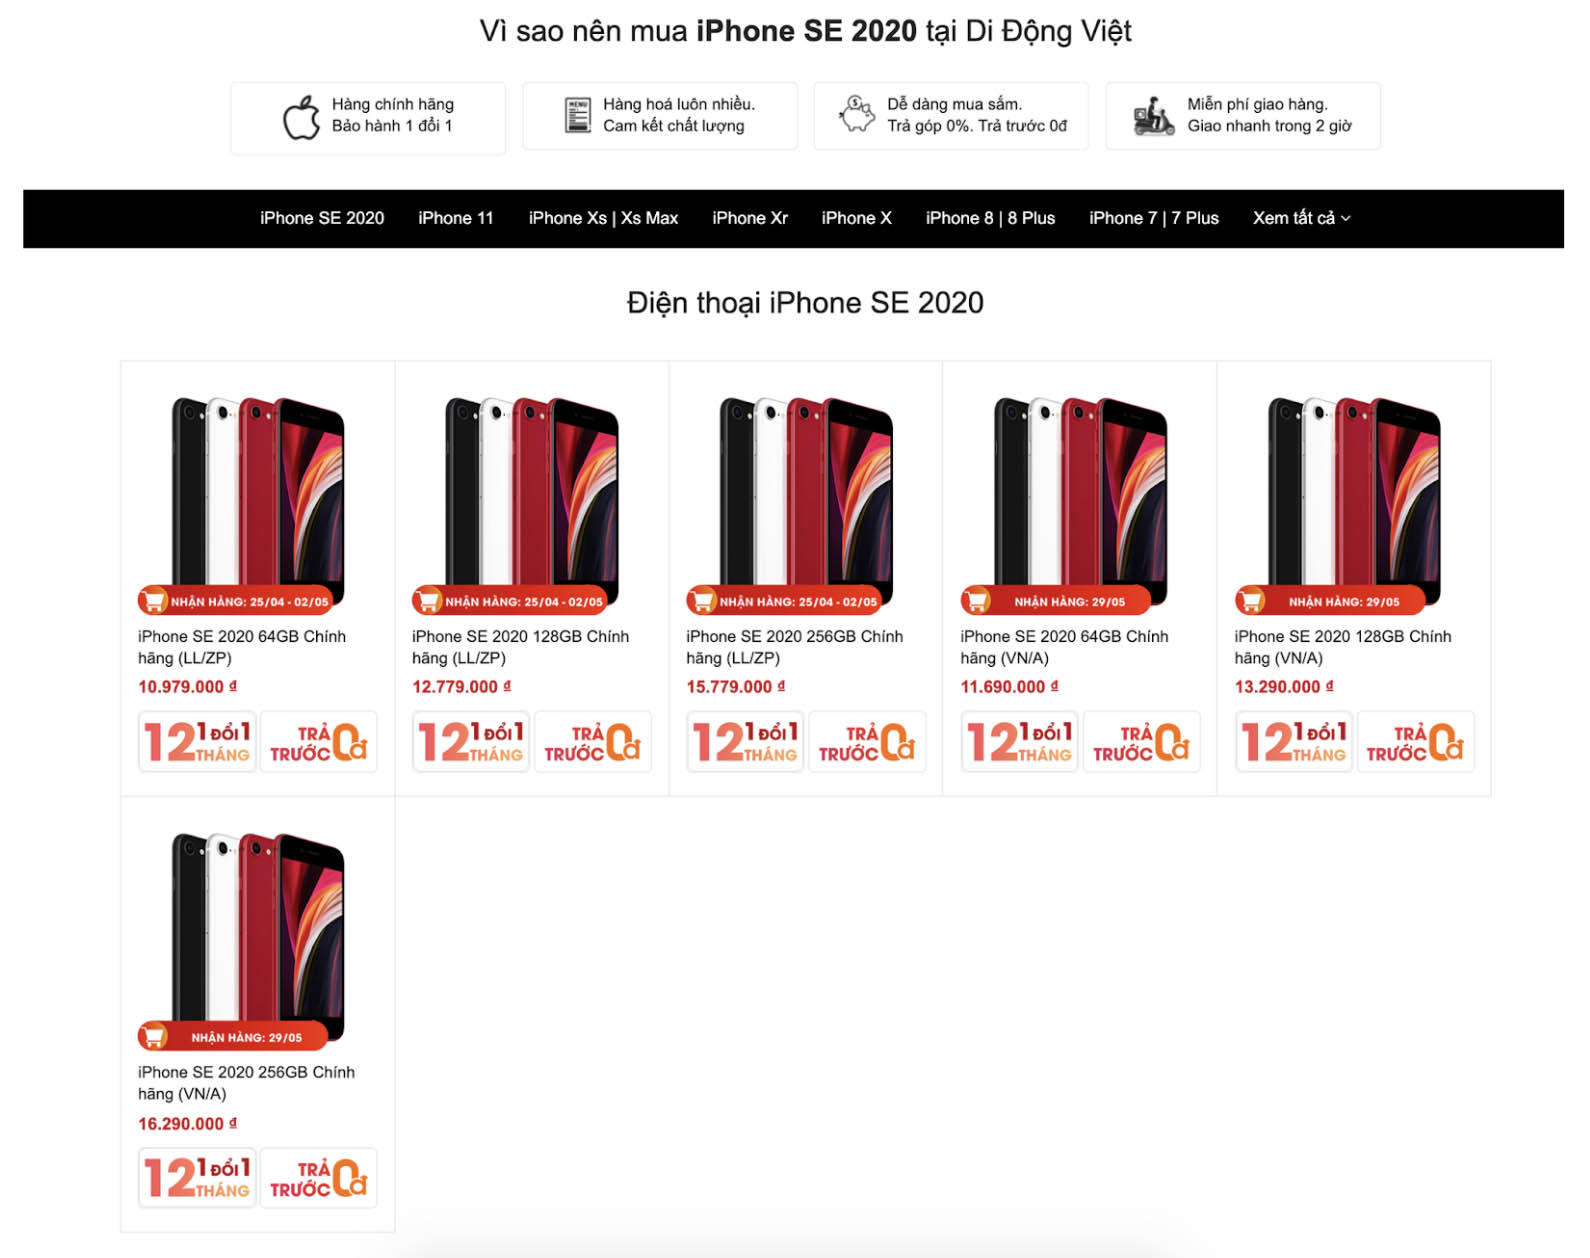 iPhone SE 2020: Màn hình 4.7", chip iPhone 11 Pro Max, đặt hàng tại Việt Nam giá dưới 11 triệu